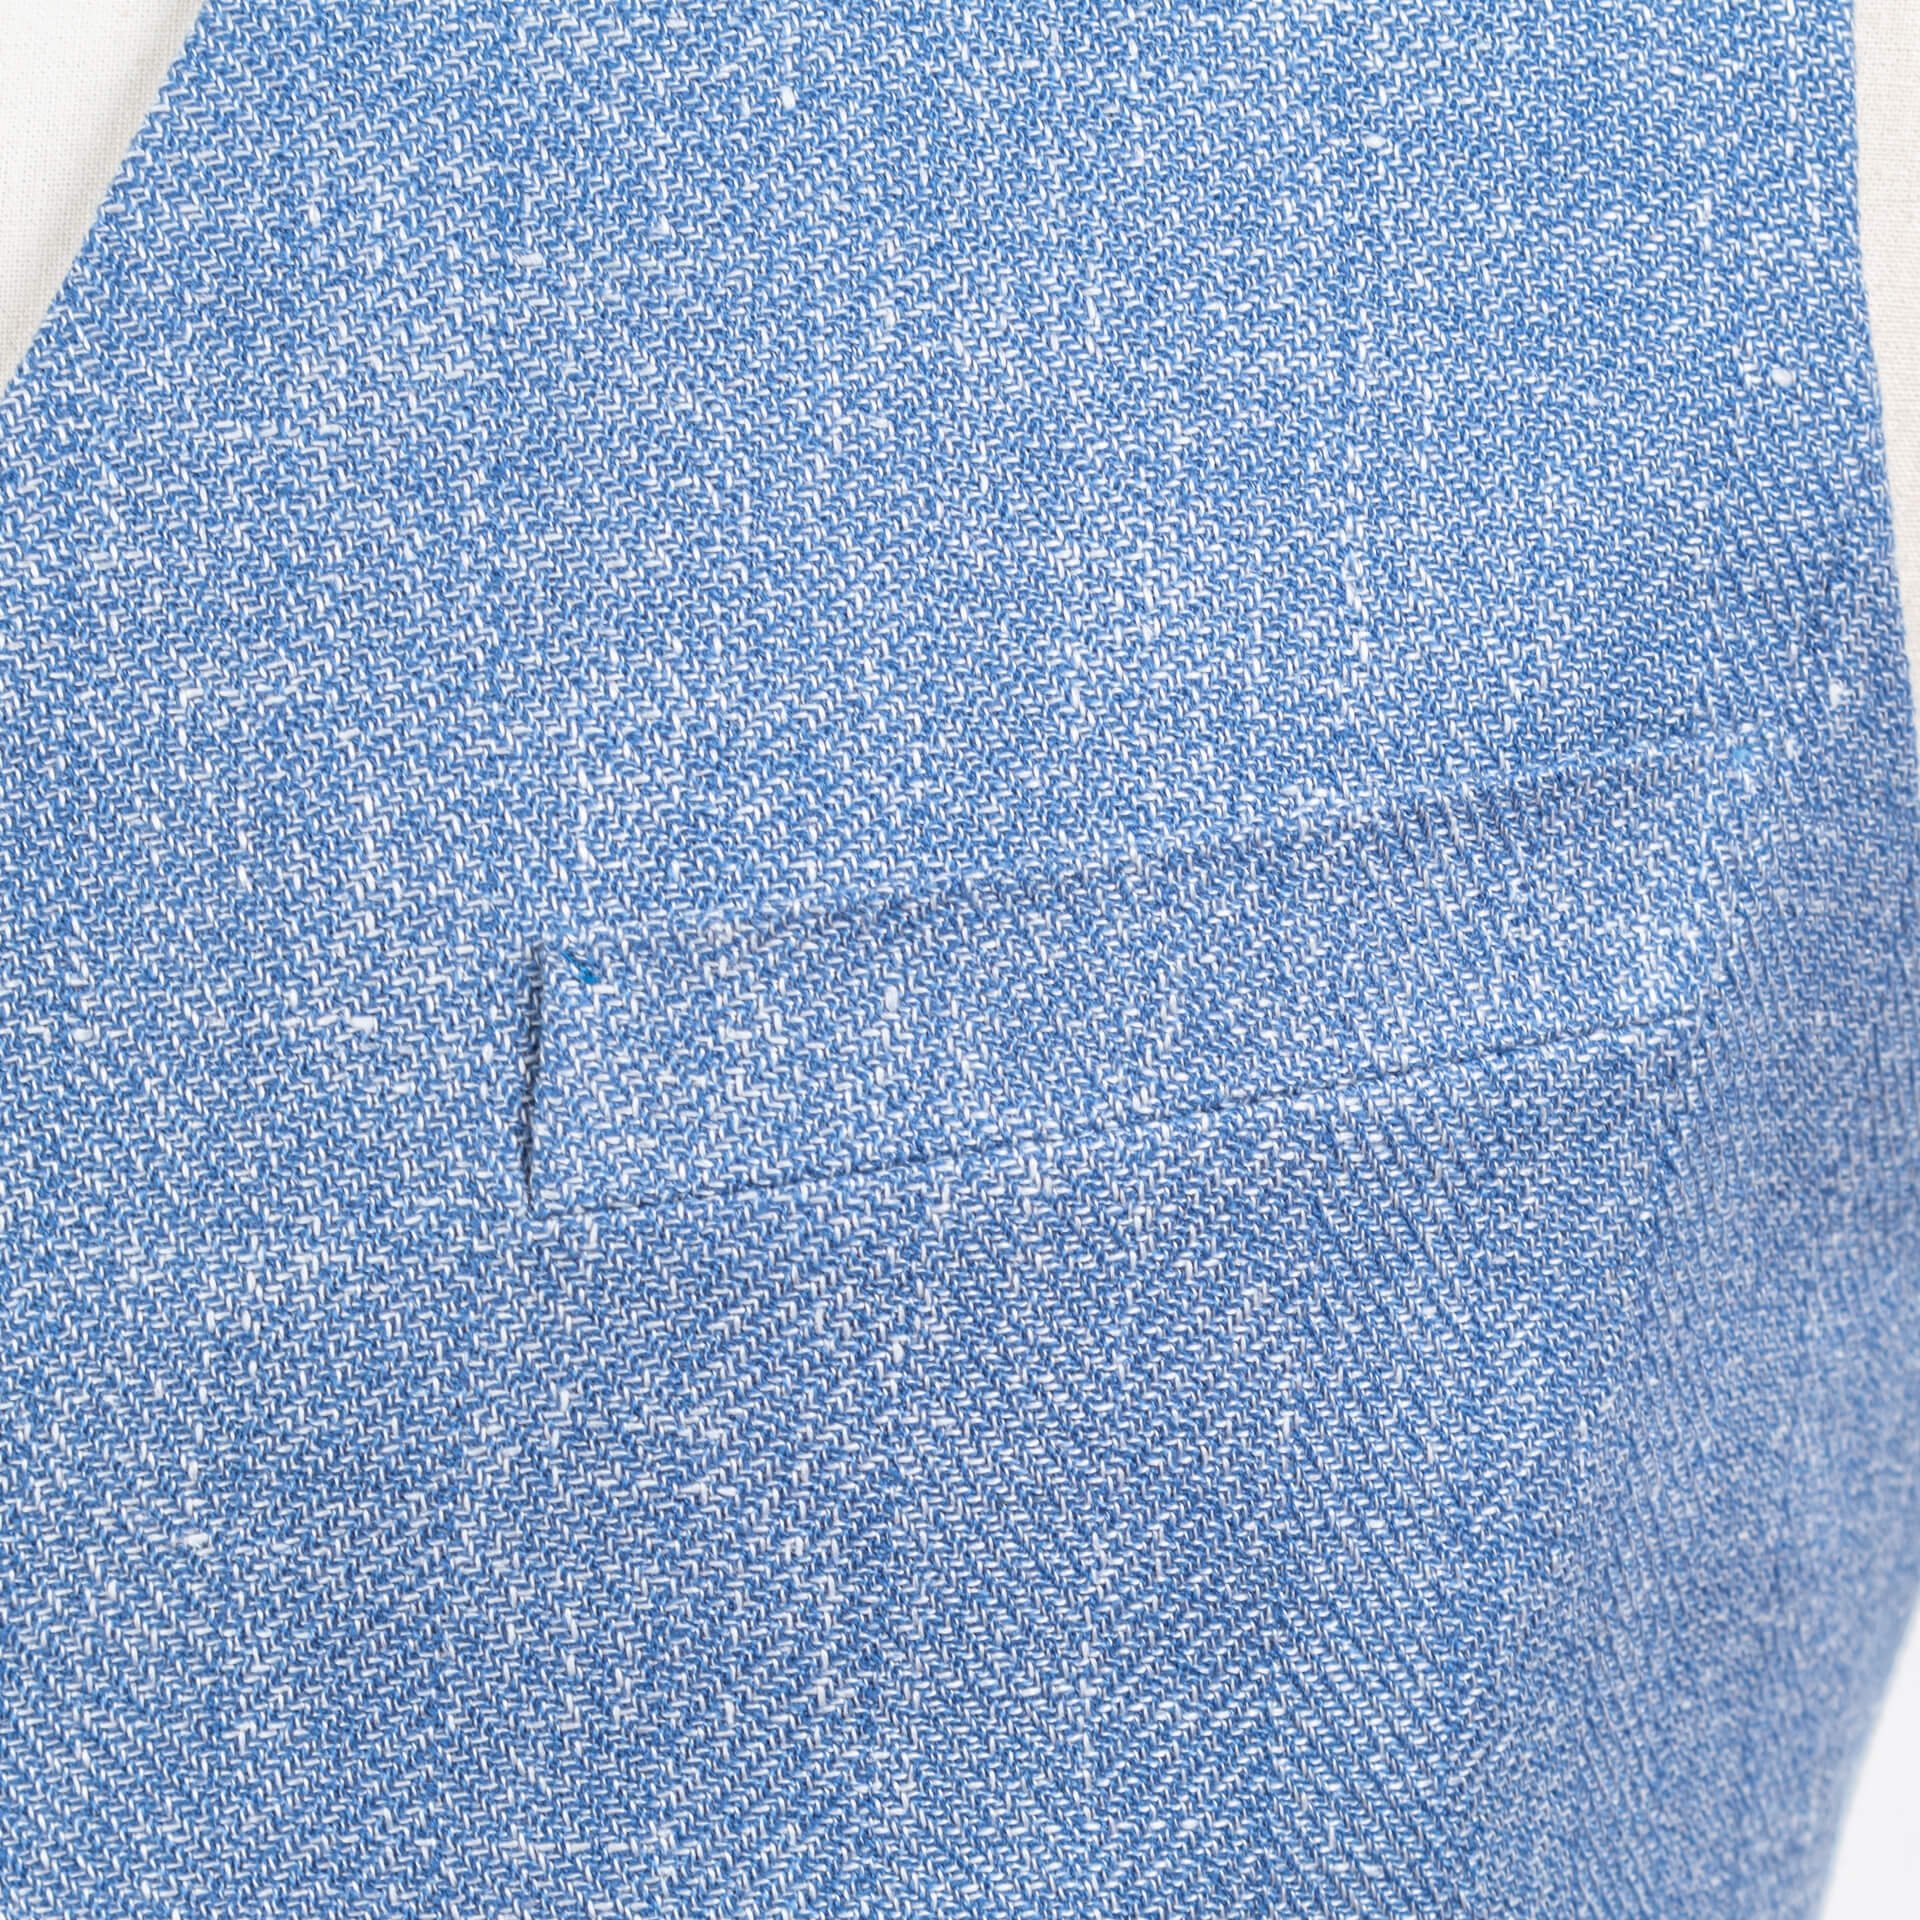 Waistcoat Baby Blue Wool Linen 310 gms Plain Weave Huddersfield Fine Worsteds